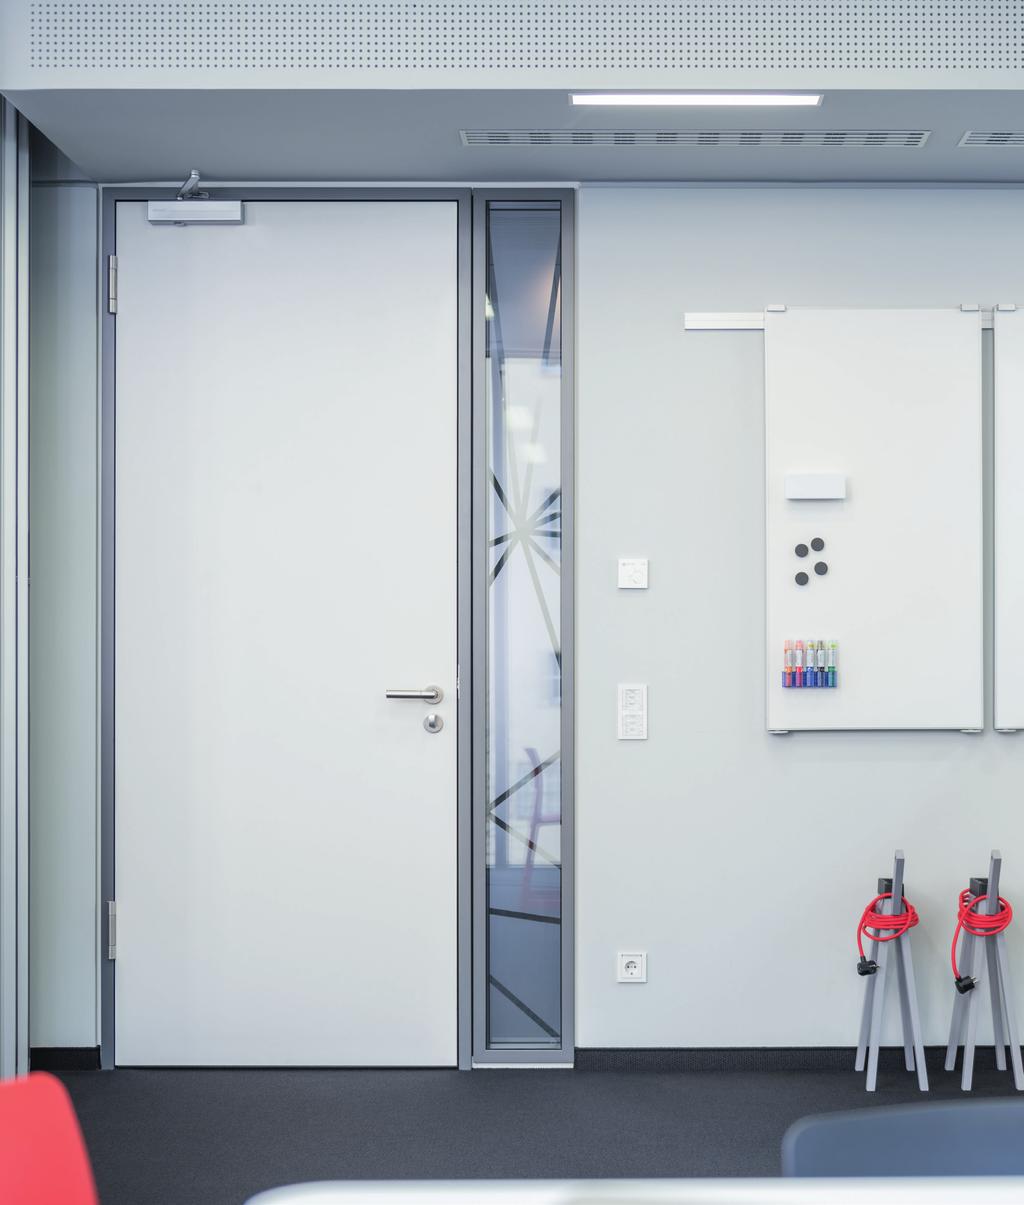 Een vertrouwde naam voor hang- en sluitwerk ASSA ABLOY innoveert in hoog tempo om topkwaliteit deurdrangers voor elke gebouwfunctie en toepassing te leveren.